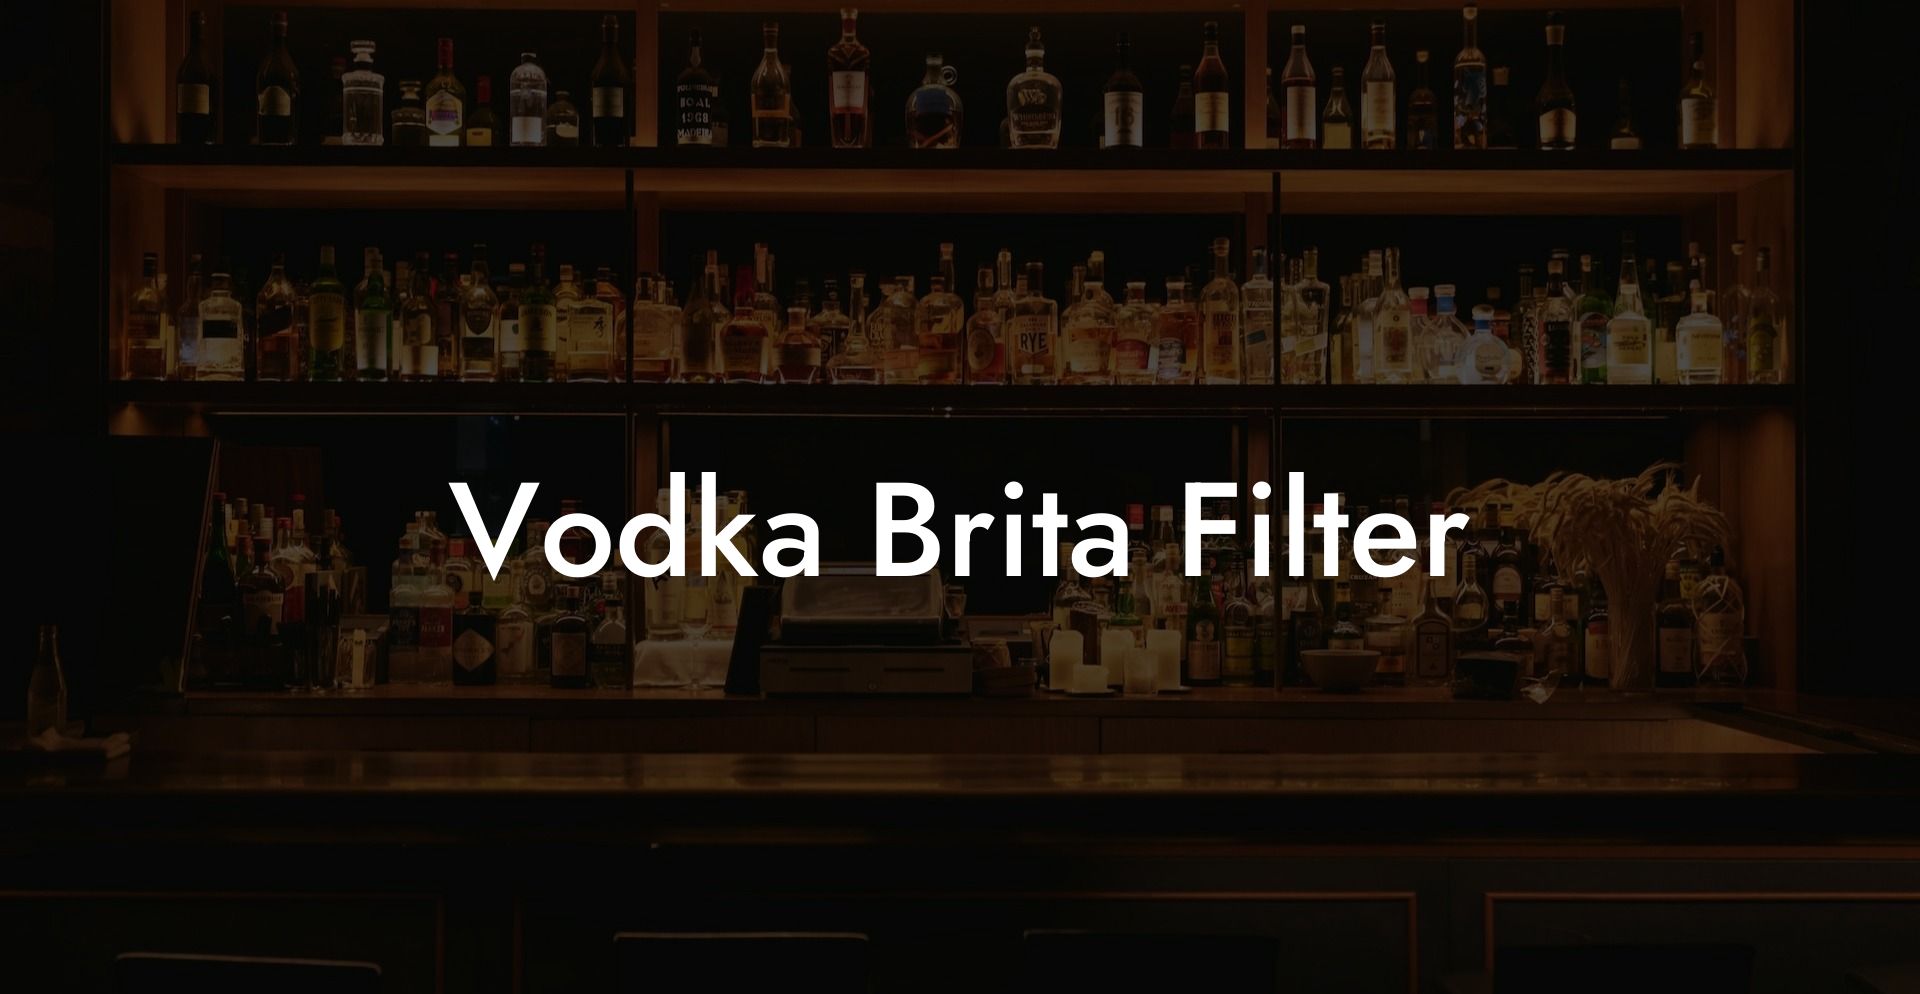 Vodka Brita Filter